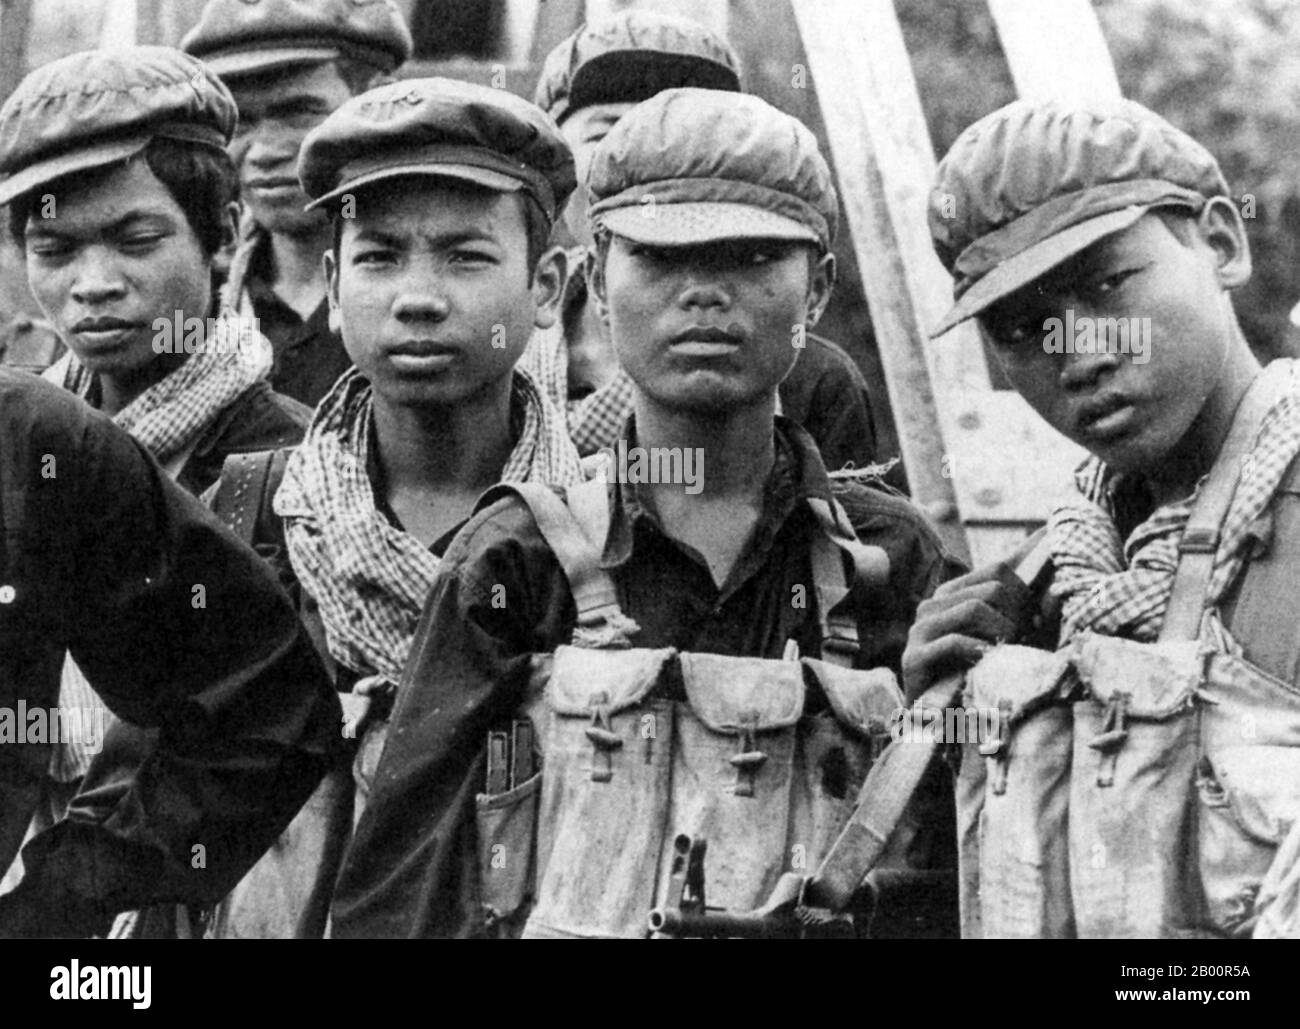 Kambodscha: Khmer Rouge Soldiers, 1975. Die Khmer Rouge, oder Kommunistische Partei von Kampuchea, regierte Kambodscha von 1975 bis 1979, angeführt von Pol Pot, Nuon Chea, Ieng Sary, Son Sen und Khieu Samphan. Es ist in erster Linie für seine Brutalität und Politik der Social Engineering, die in Millionen von Todesfällen geführt erinnert. Ihre Versuche zur Agrarreform führten zu einer weit verbreiteten Hungersnot, während ihr Beharren auf absoluter Selbstversorgung, auch bei der Versorgung mit Medikamenten, zum Tod von Tausenden an behandelbaren Krankheiten (wie Malaria) führte. Stockfoto